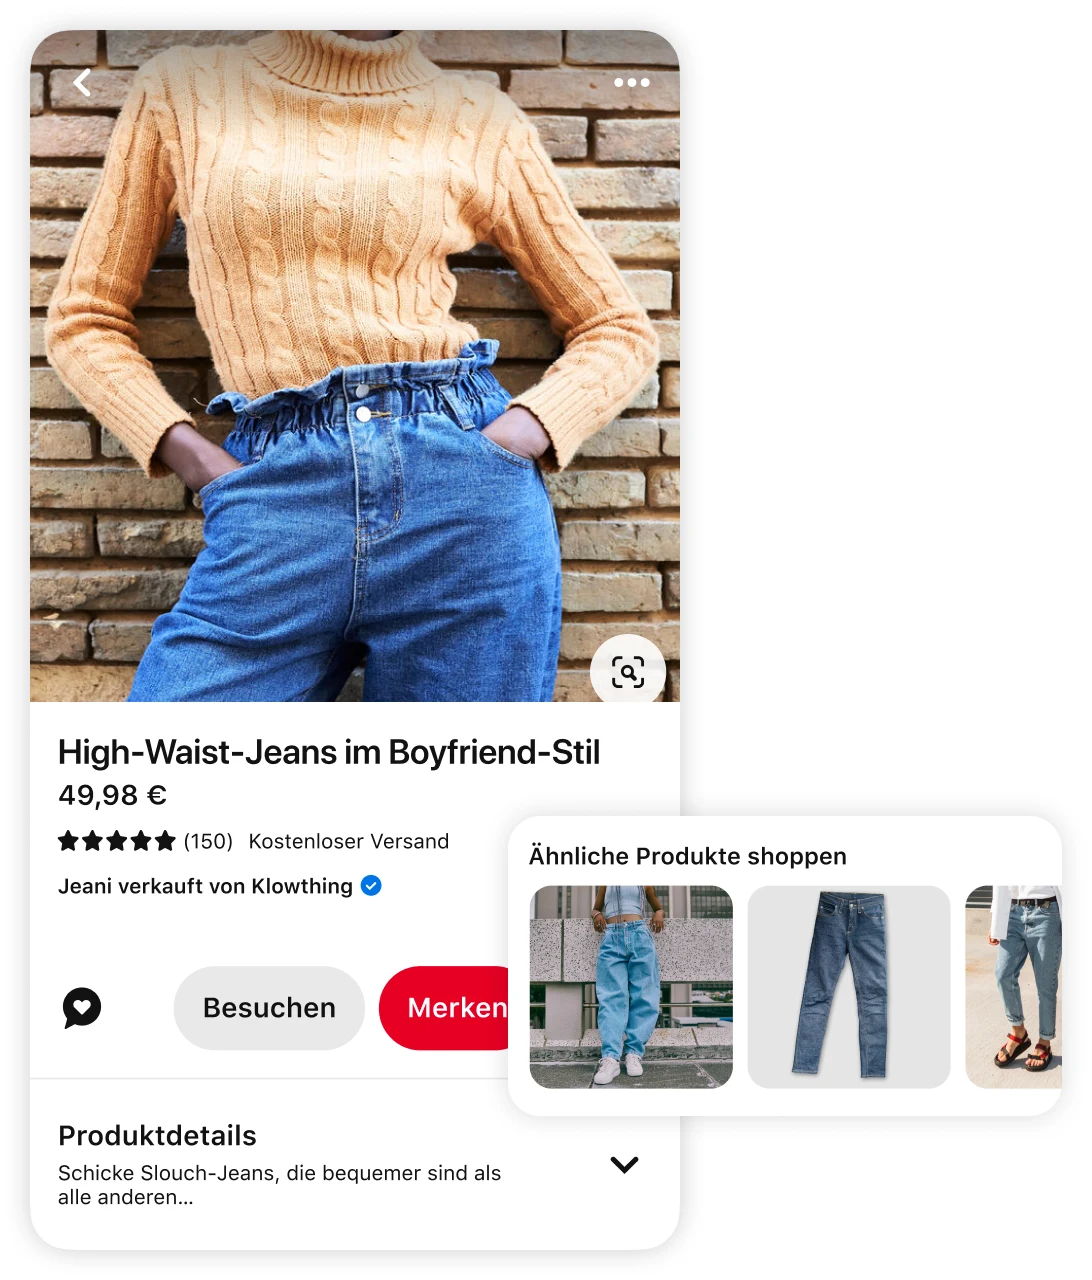 Ein Pin von einer Frau in einem orangefarbenen Strickpullover und einer Boyfriend-Jeans mit hoher Taille mit ähnlichen vorgeschlagenen Produkten und der Aufforderung „Ähnliche Produkte shoppen“